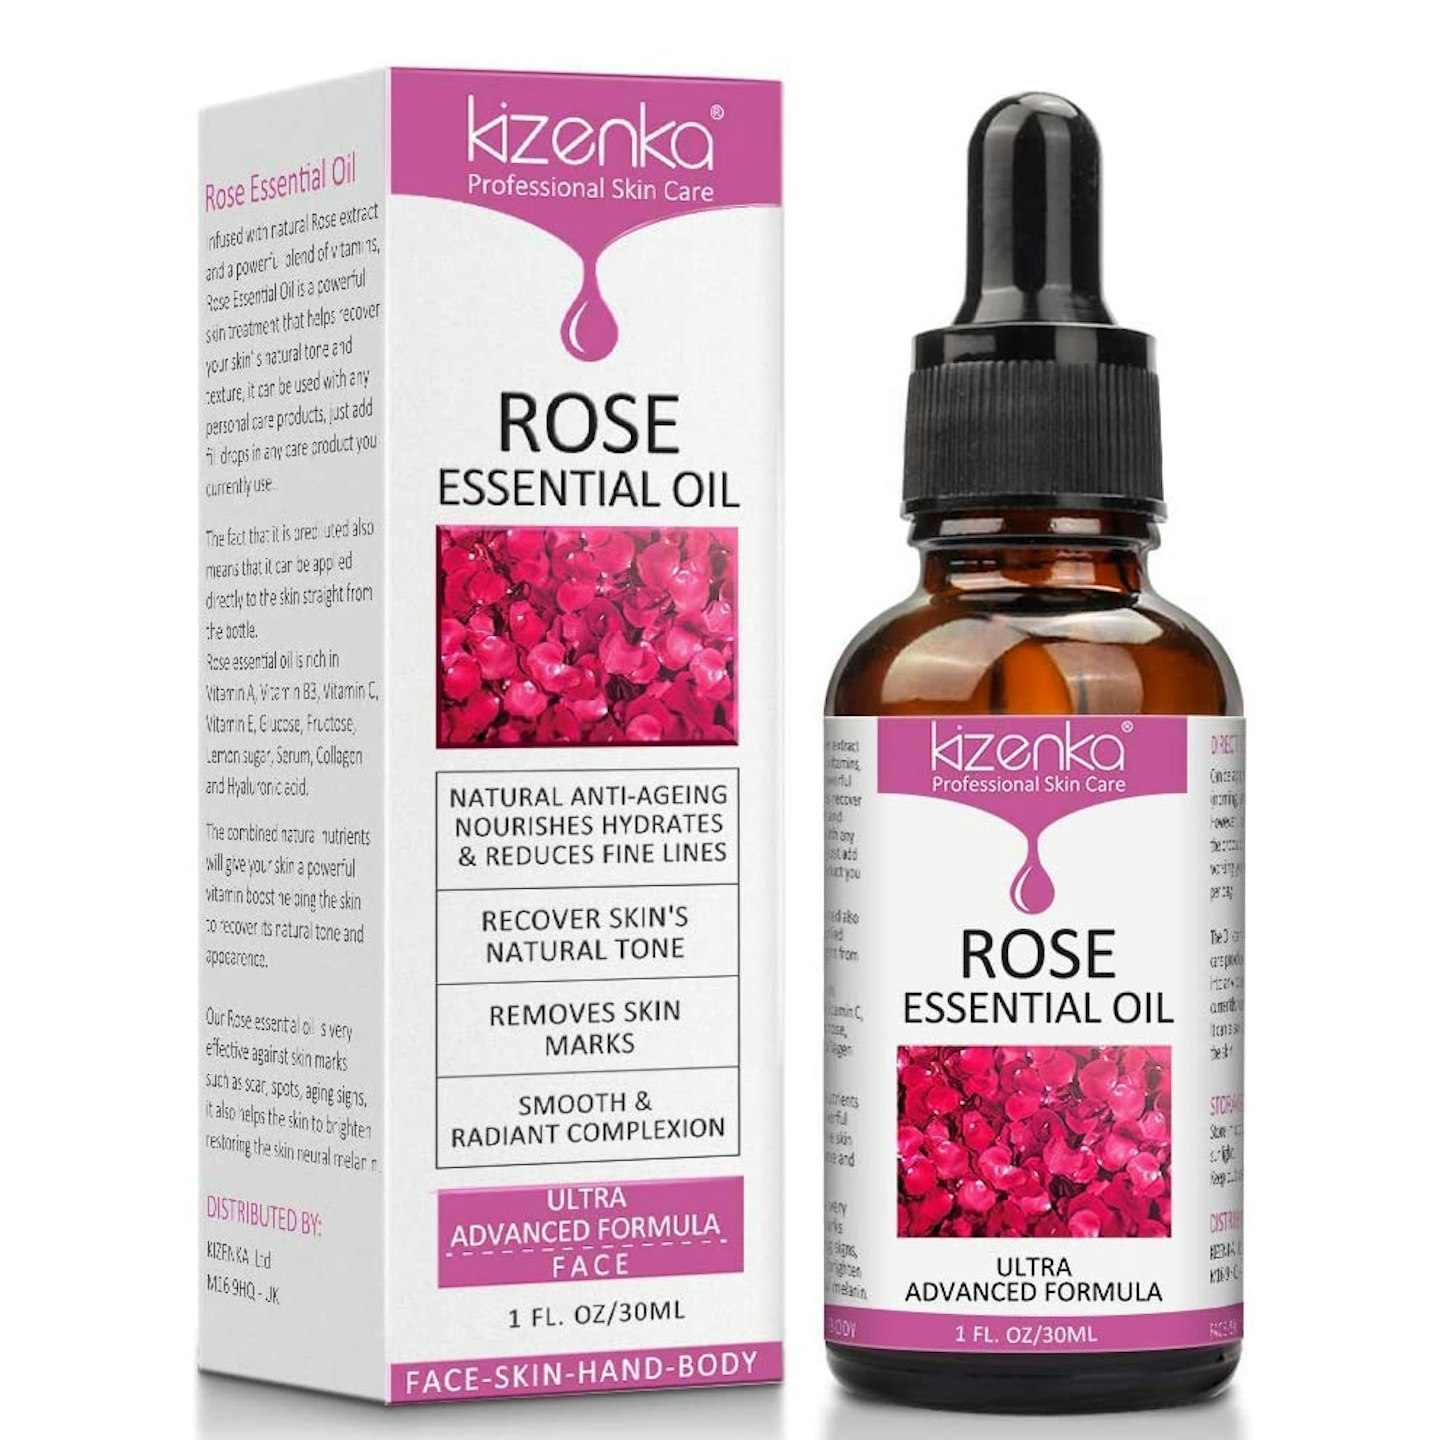 Kizenka Rose Essential Oil, 30ml